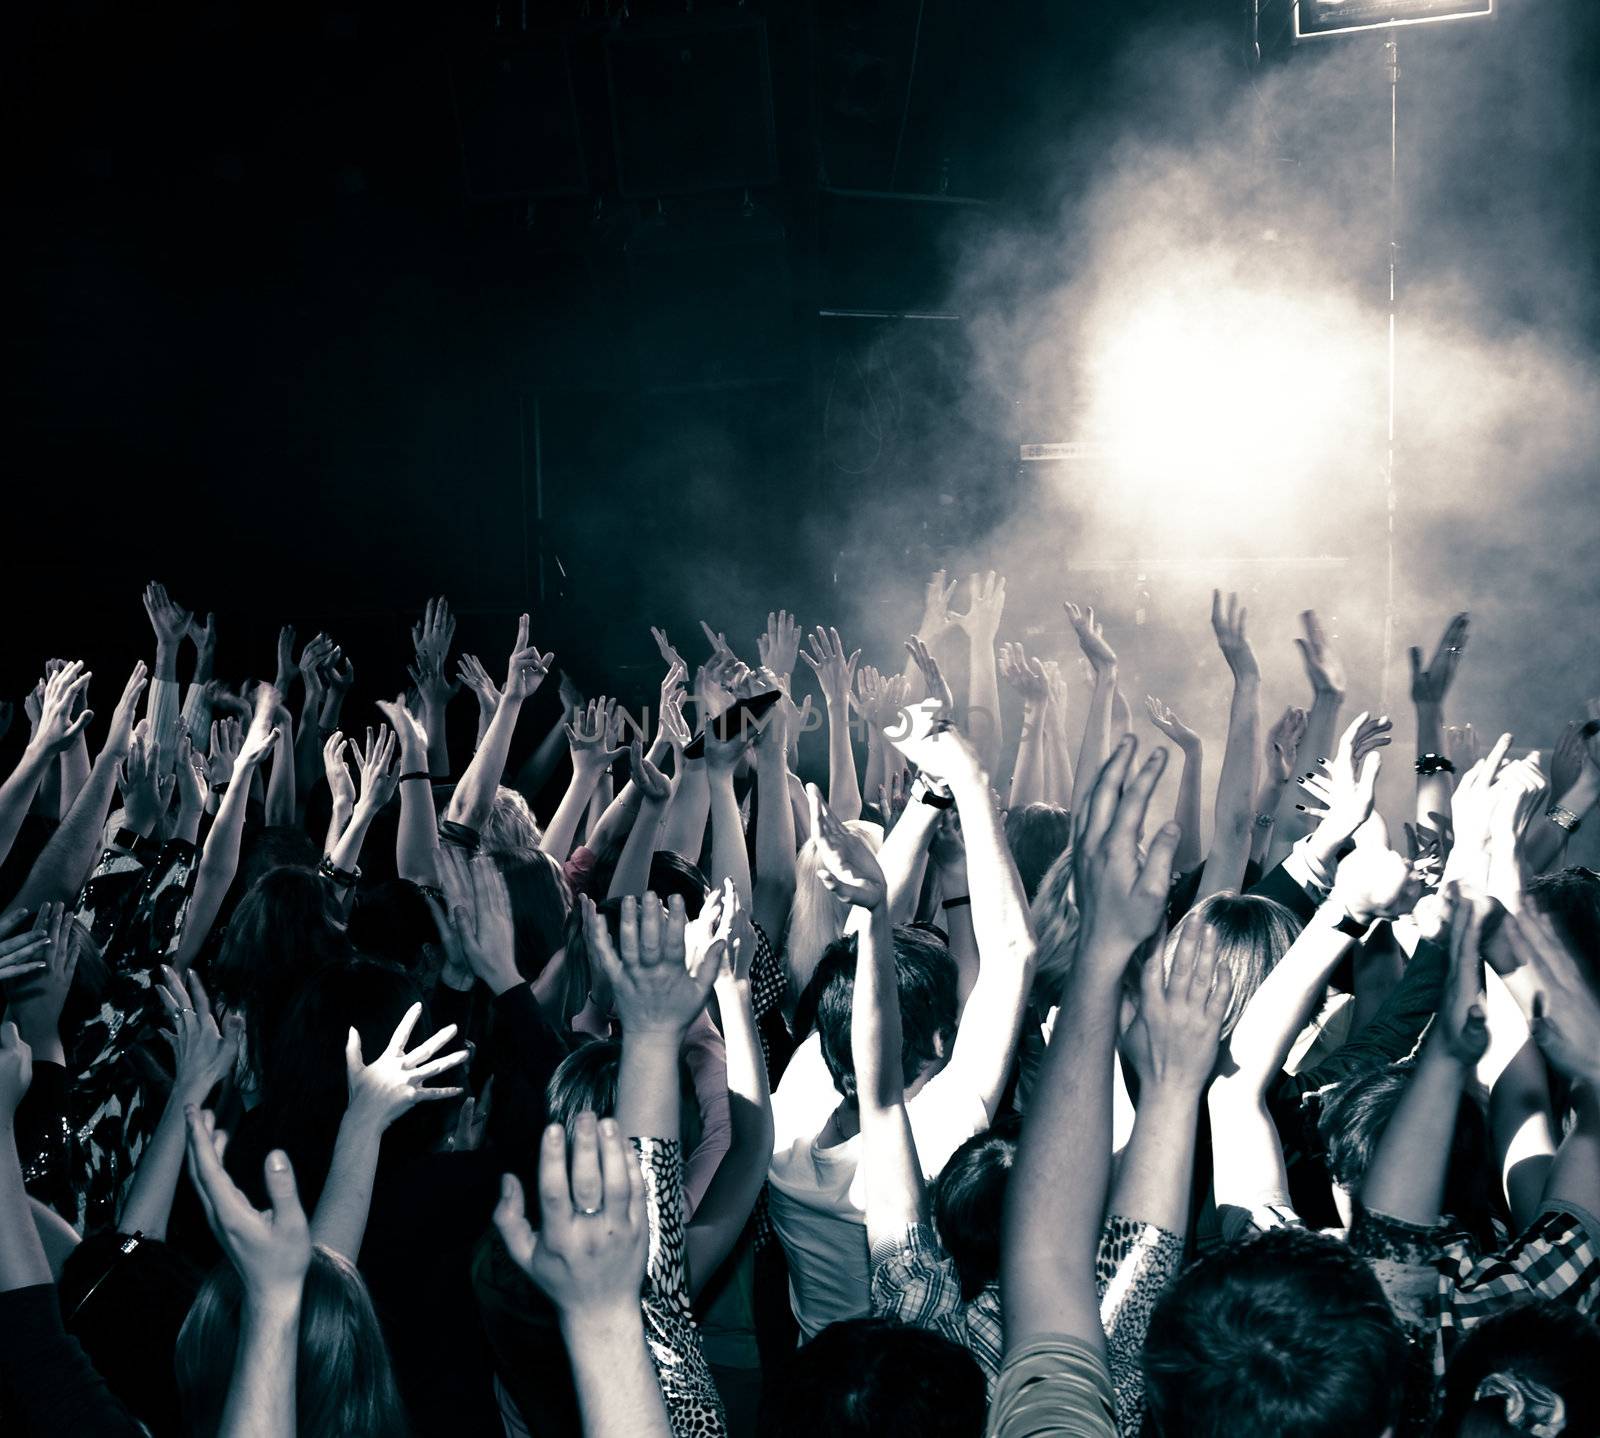 Concert crowd, hands up, toned